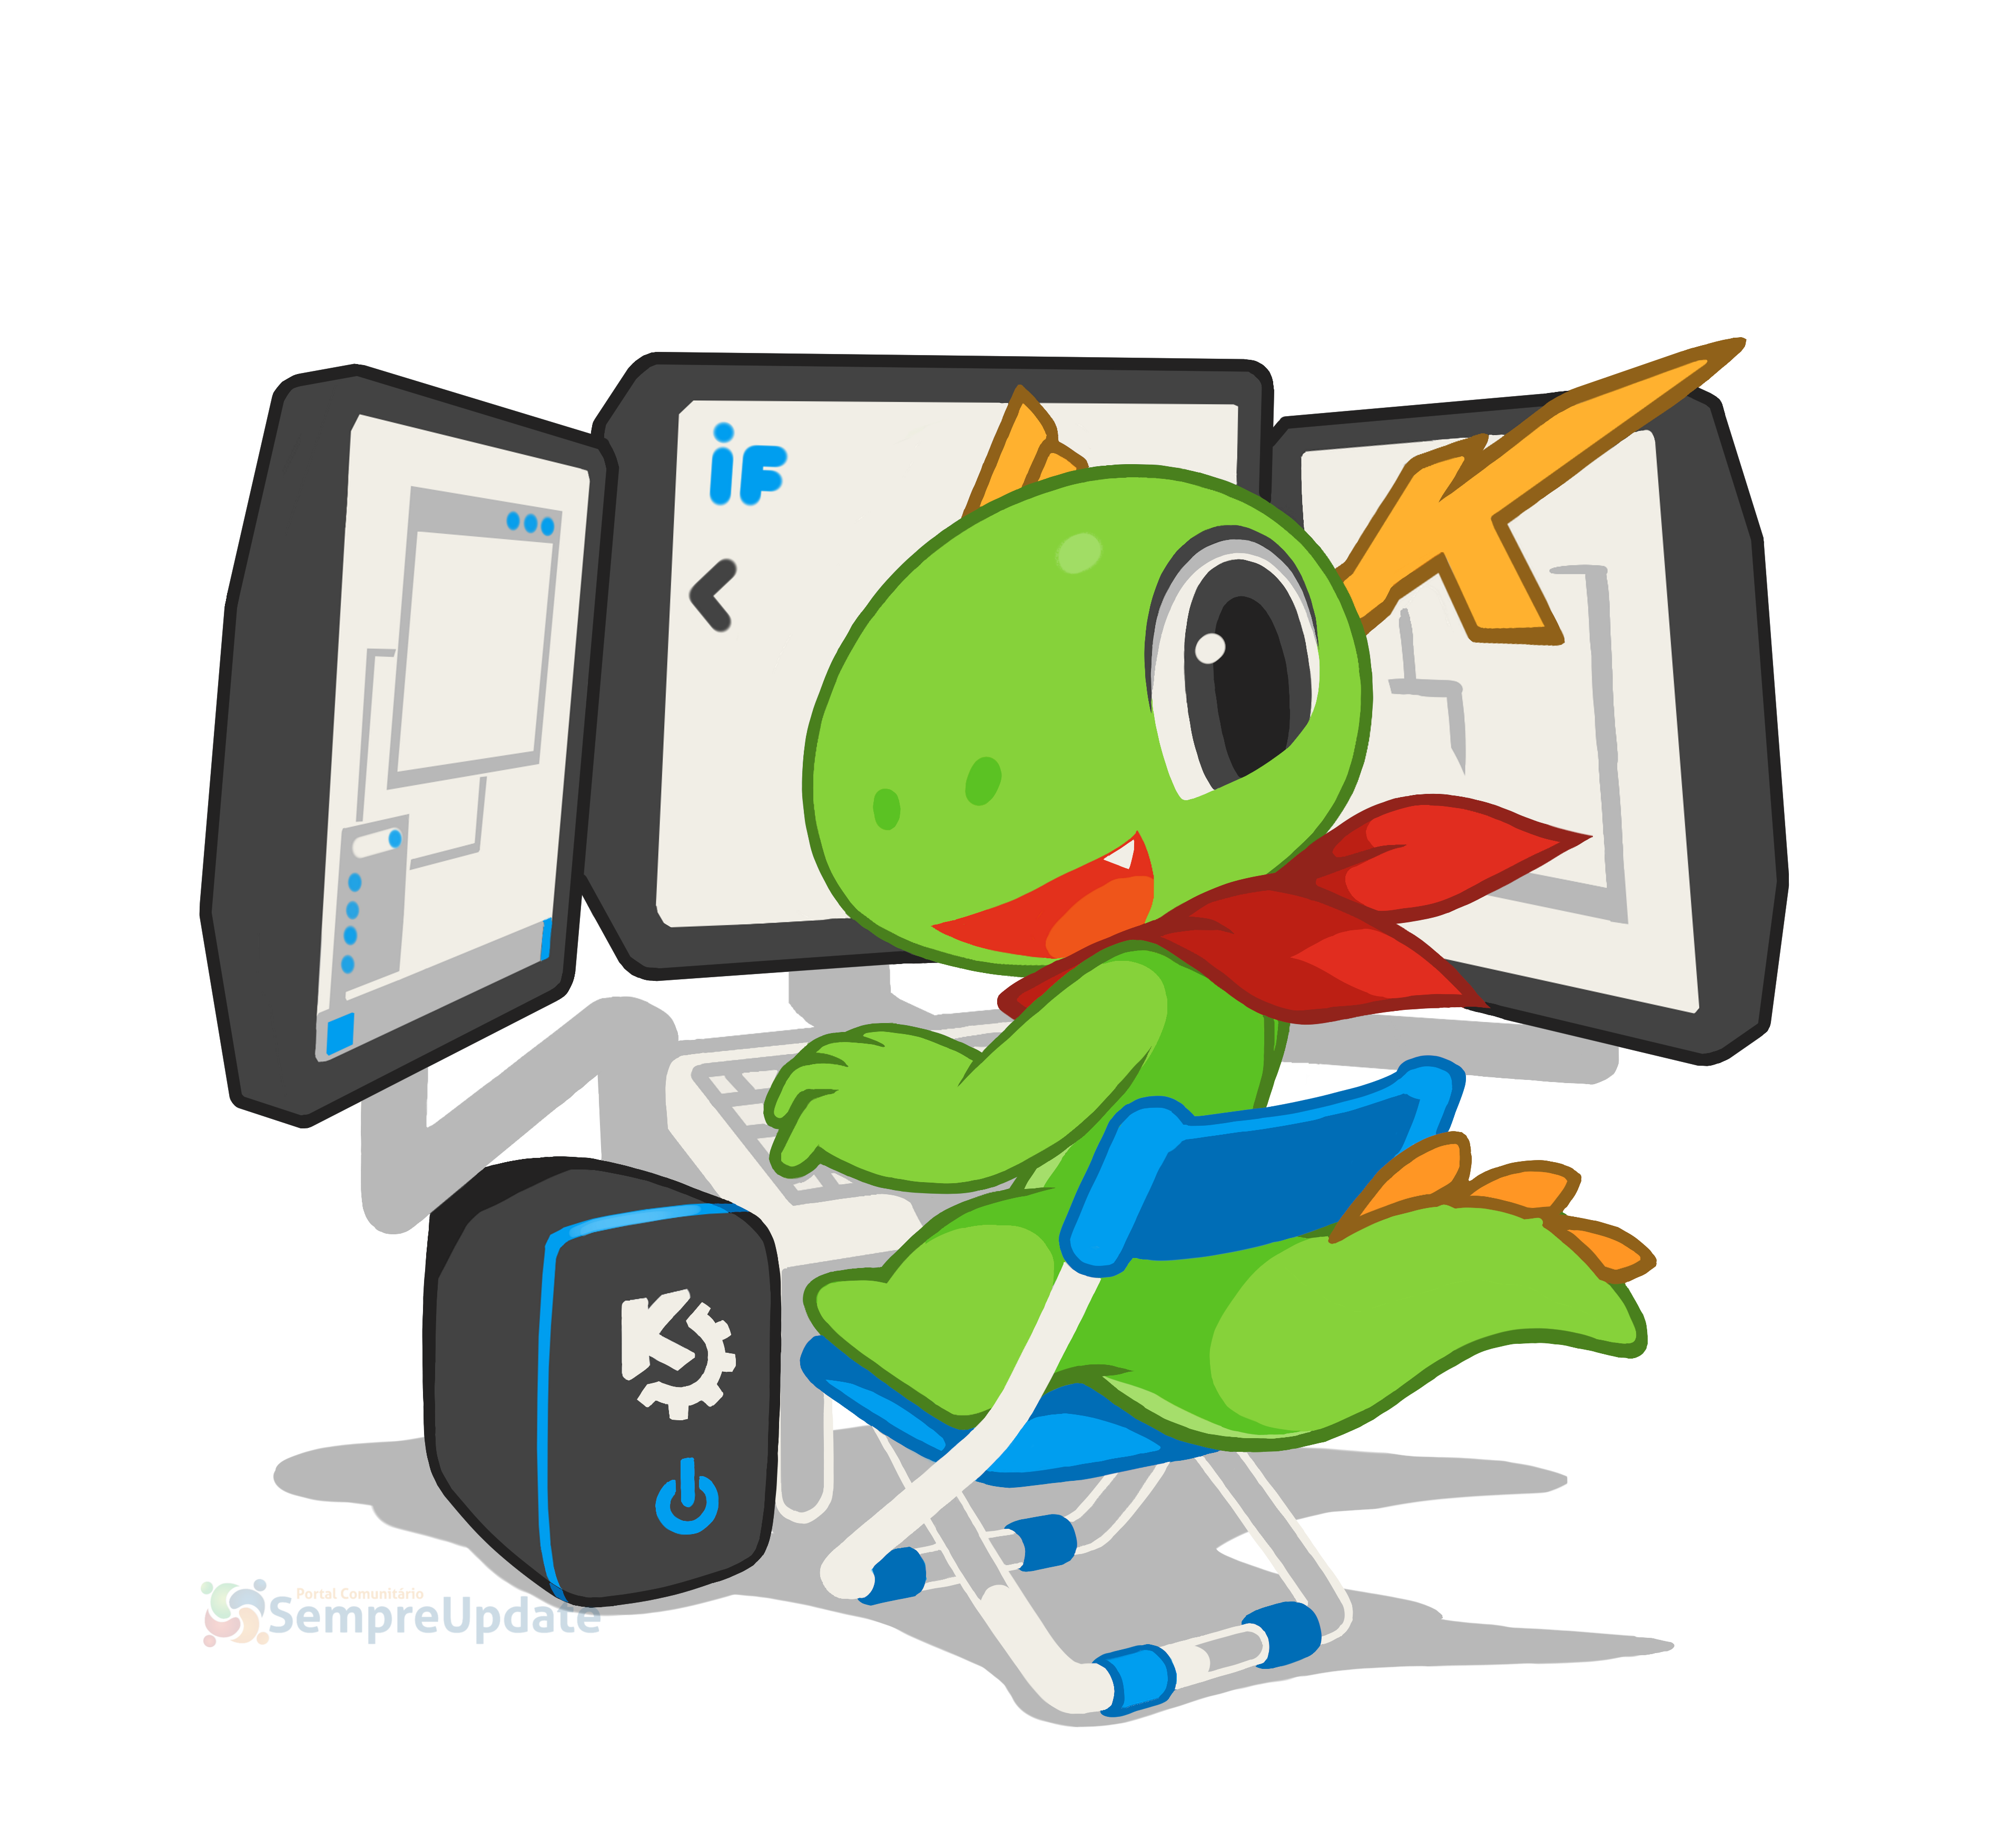 KDE Applications melhora o KTorrent, KMyMoney, KDiff3 e outros